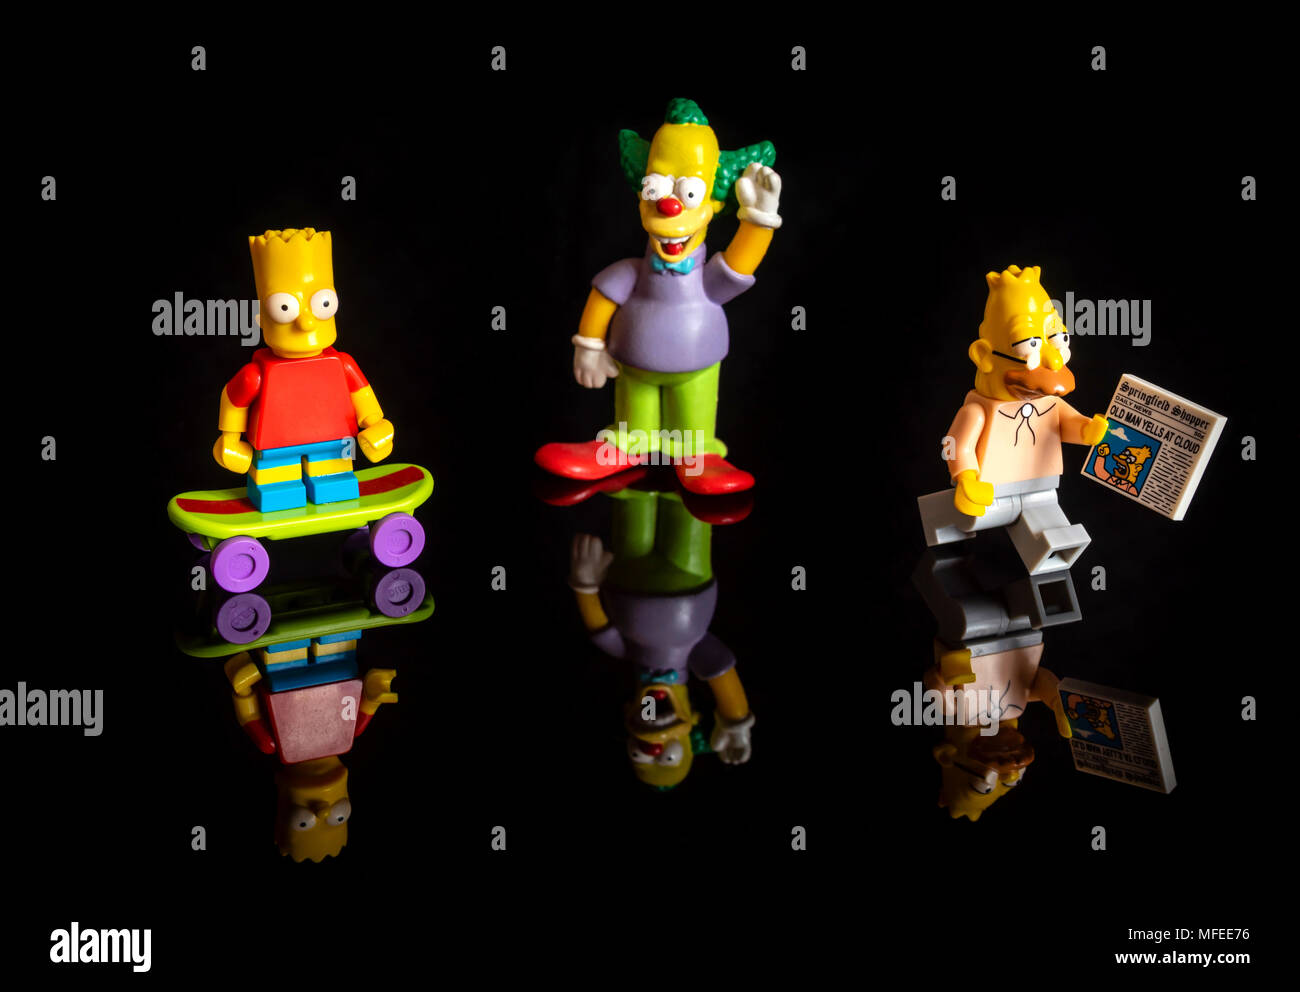 Les figures miniatures Lego Simpsons (Bart Simpson, Krusty le clown et Grampa Simpson) sur fond noir réfléchissante Banque D'Images